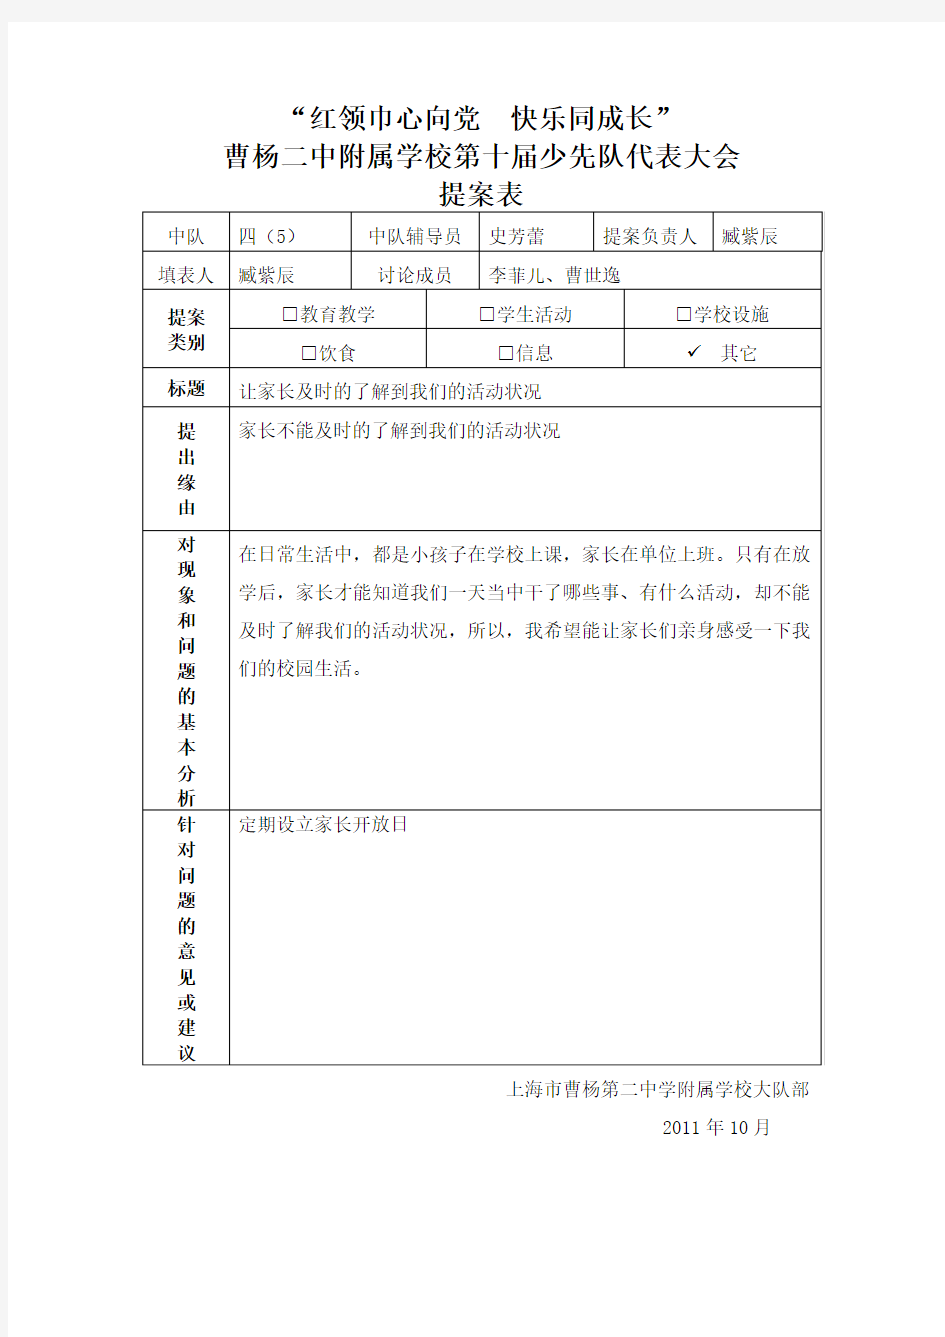 曹杨二中附属学校第七届少代会提案表